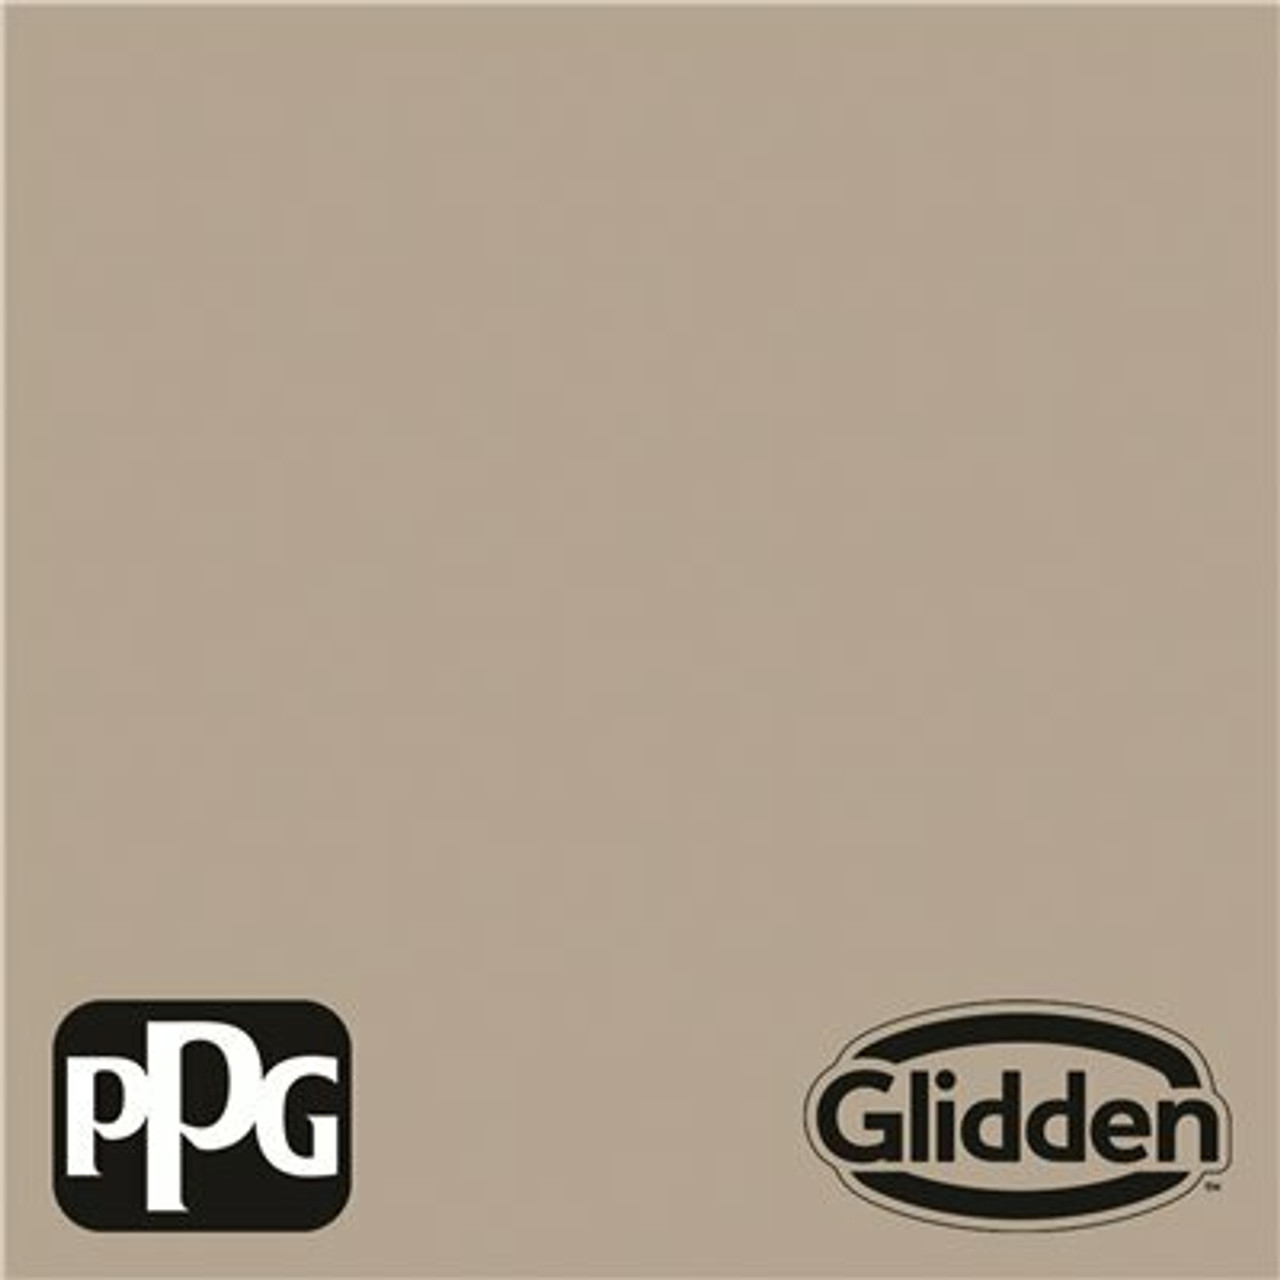 Glidden Essentials 5 Gal. #Ppg1025-4 Sharkskin Flat Exterior Paint